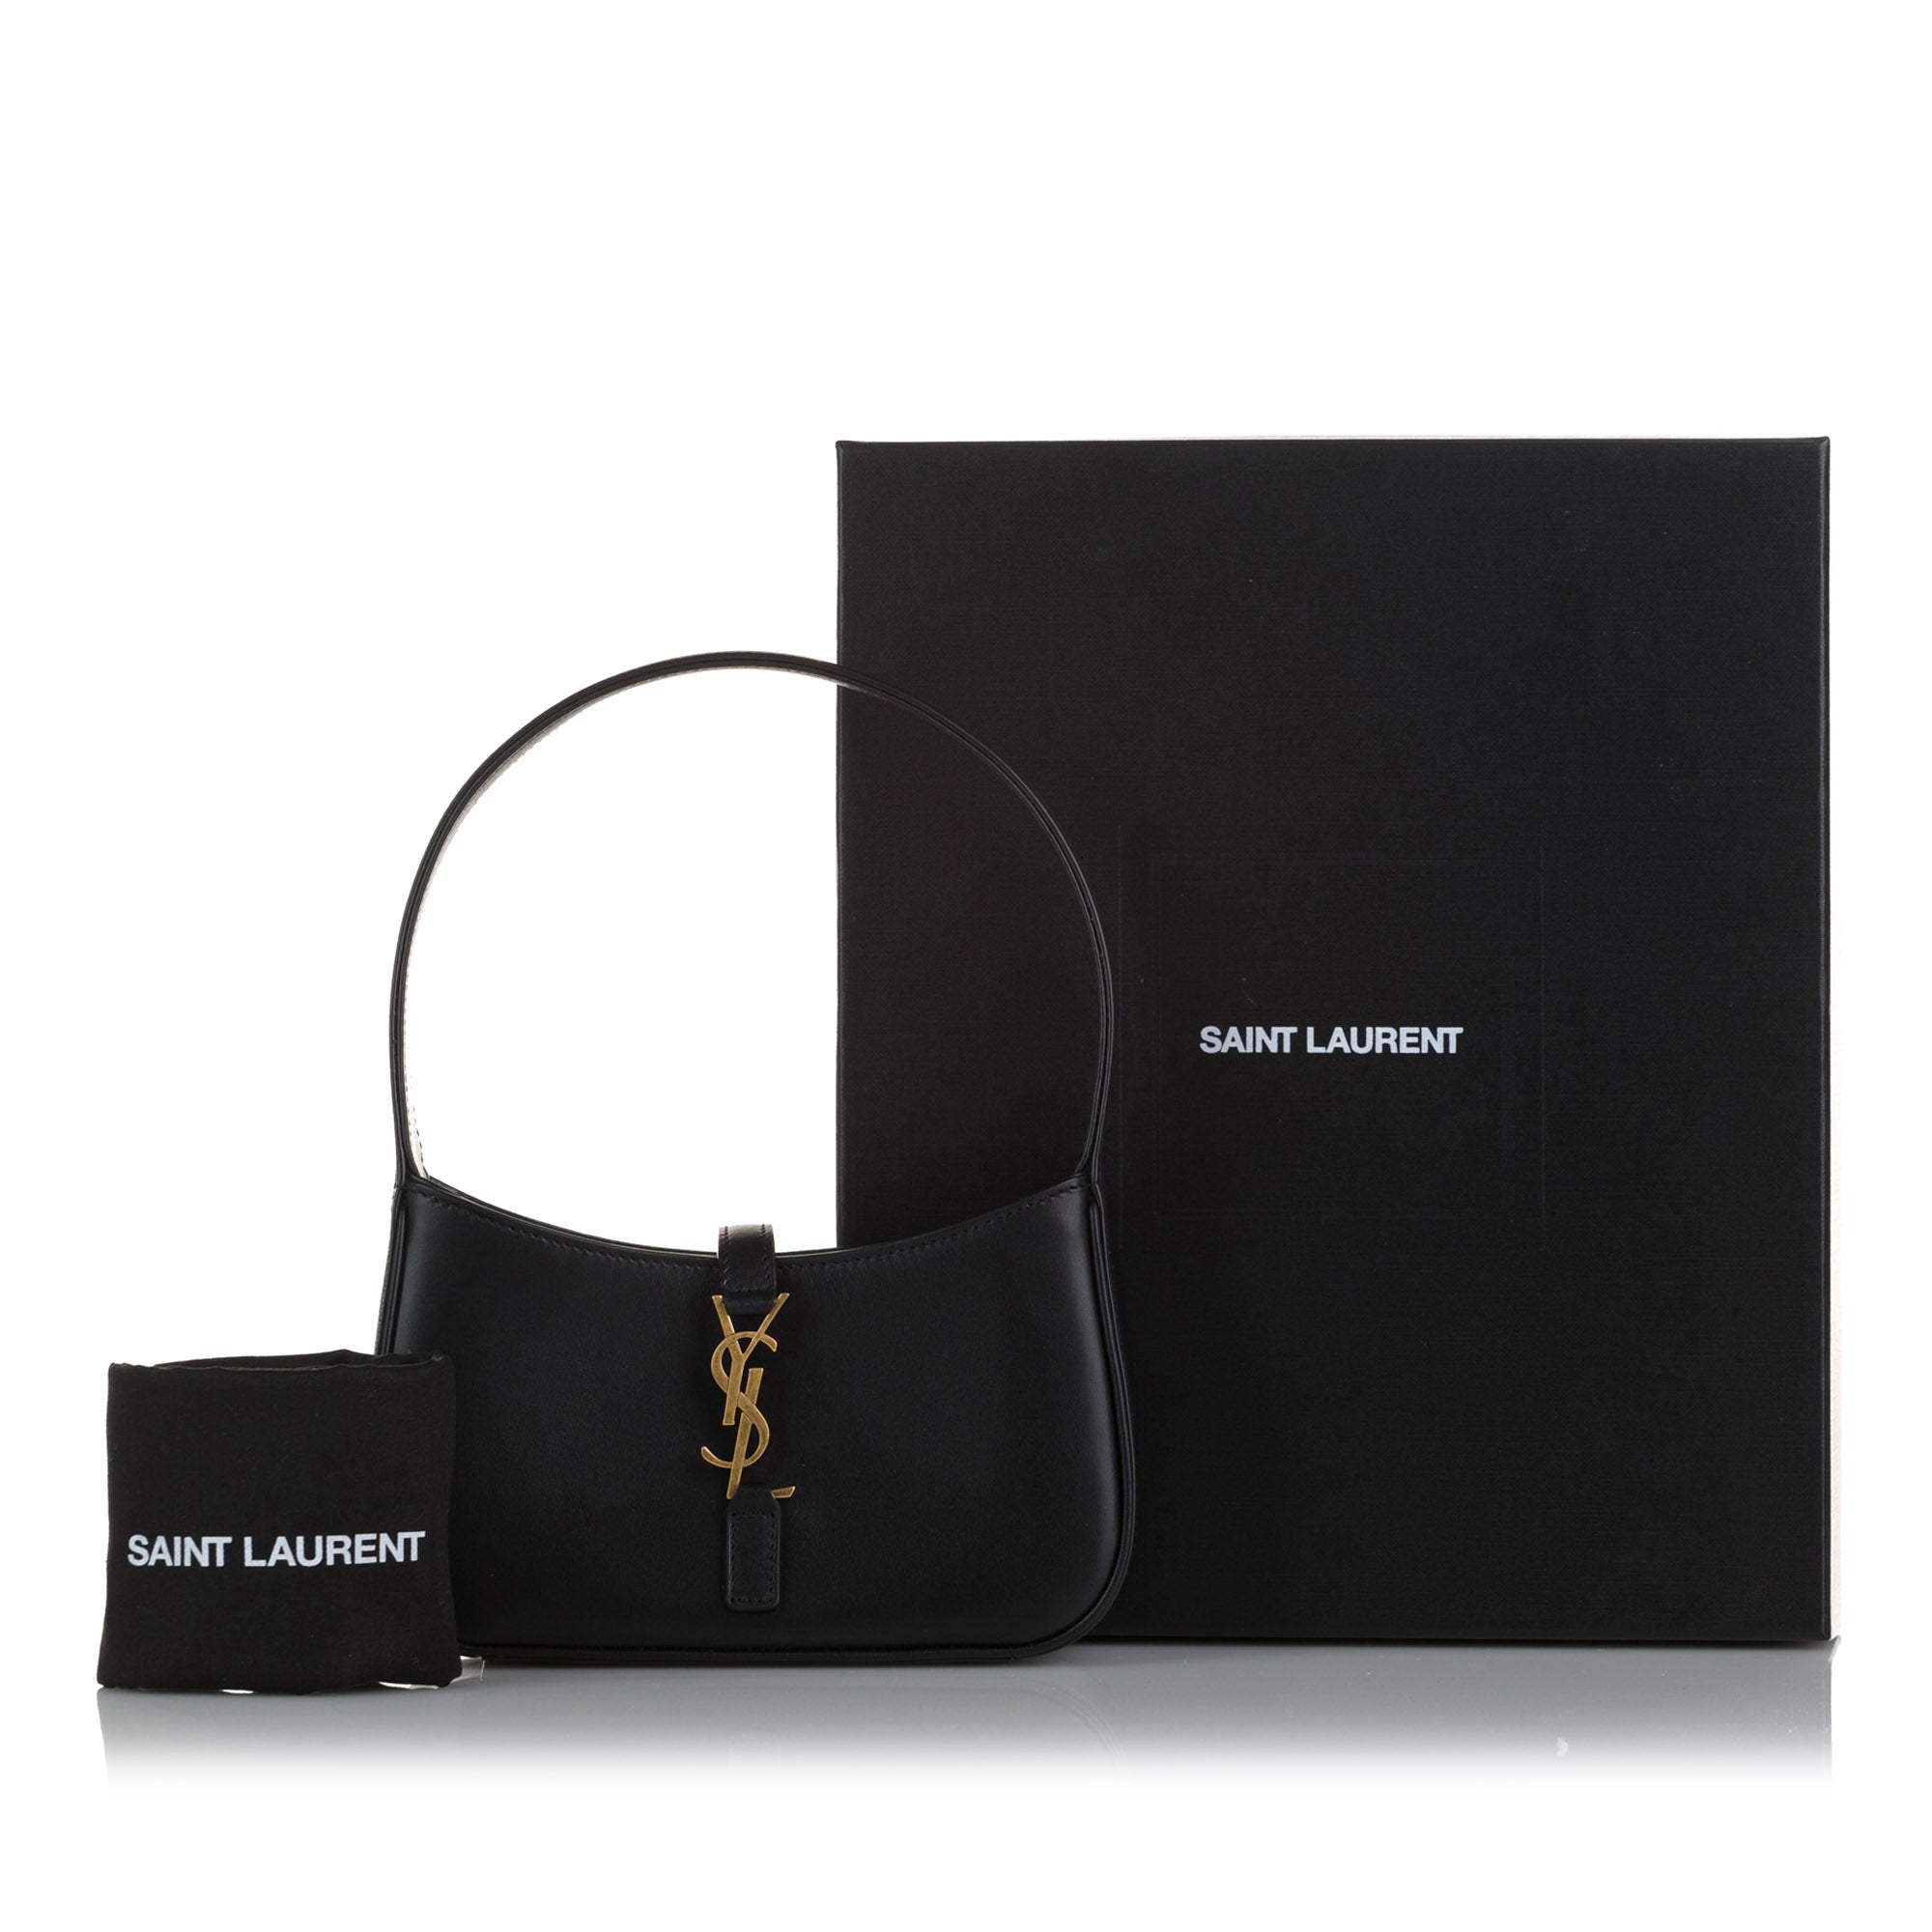 SAINT LAURENT Saint Laurent Hobo Le 5 à 7 In Smooth Black Calfskin Leather Shoulder Bag - Vault 55